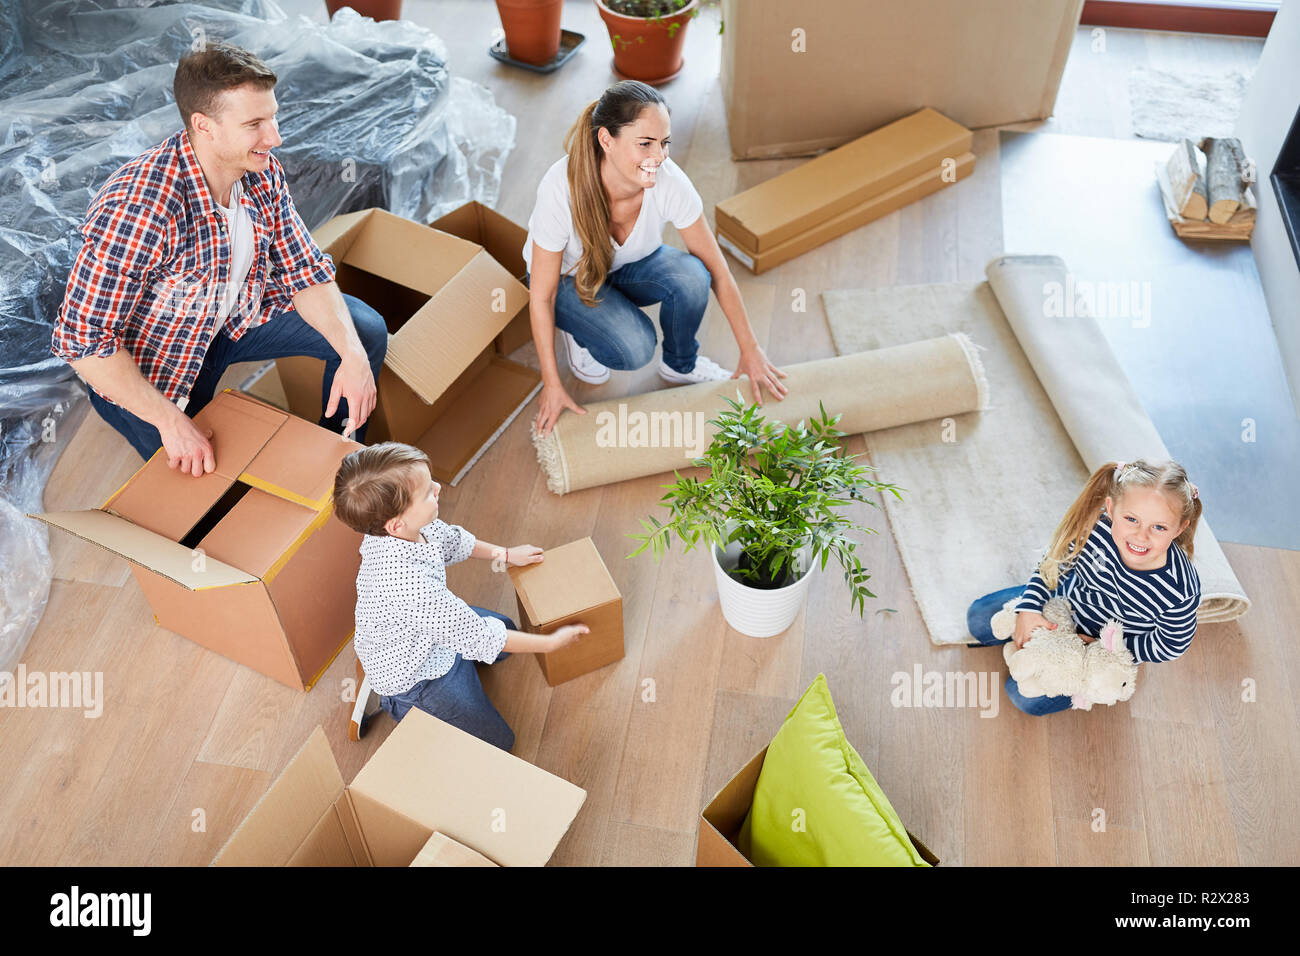 Eltern und zwei Kindern in ihrem neuen Zuhause Verpackung Kisten Stockfoto